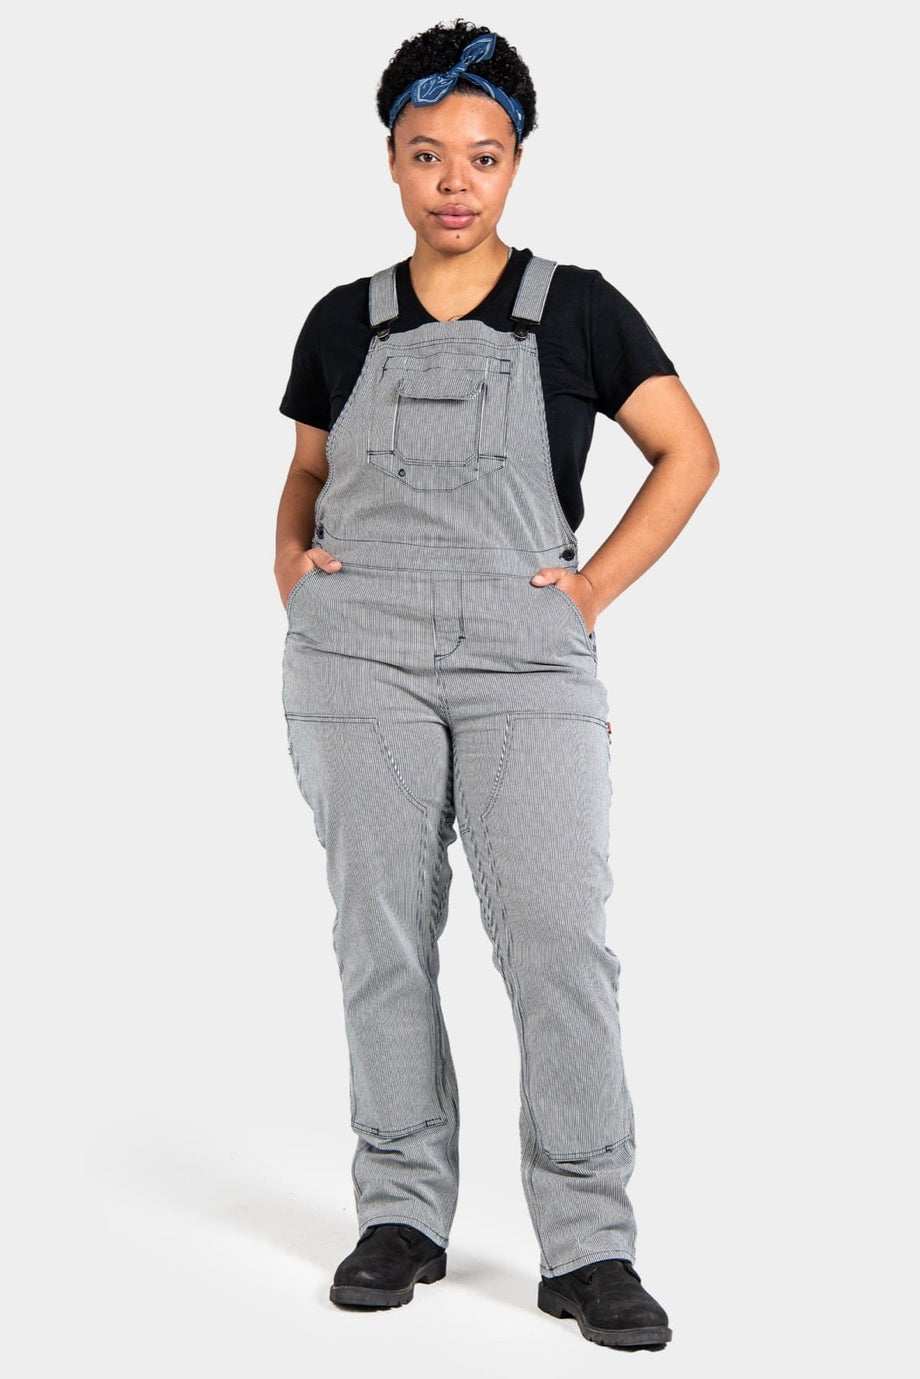 Dovetail Workwear / Women's Freshley Overall - Indigo Stripe